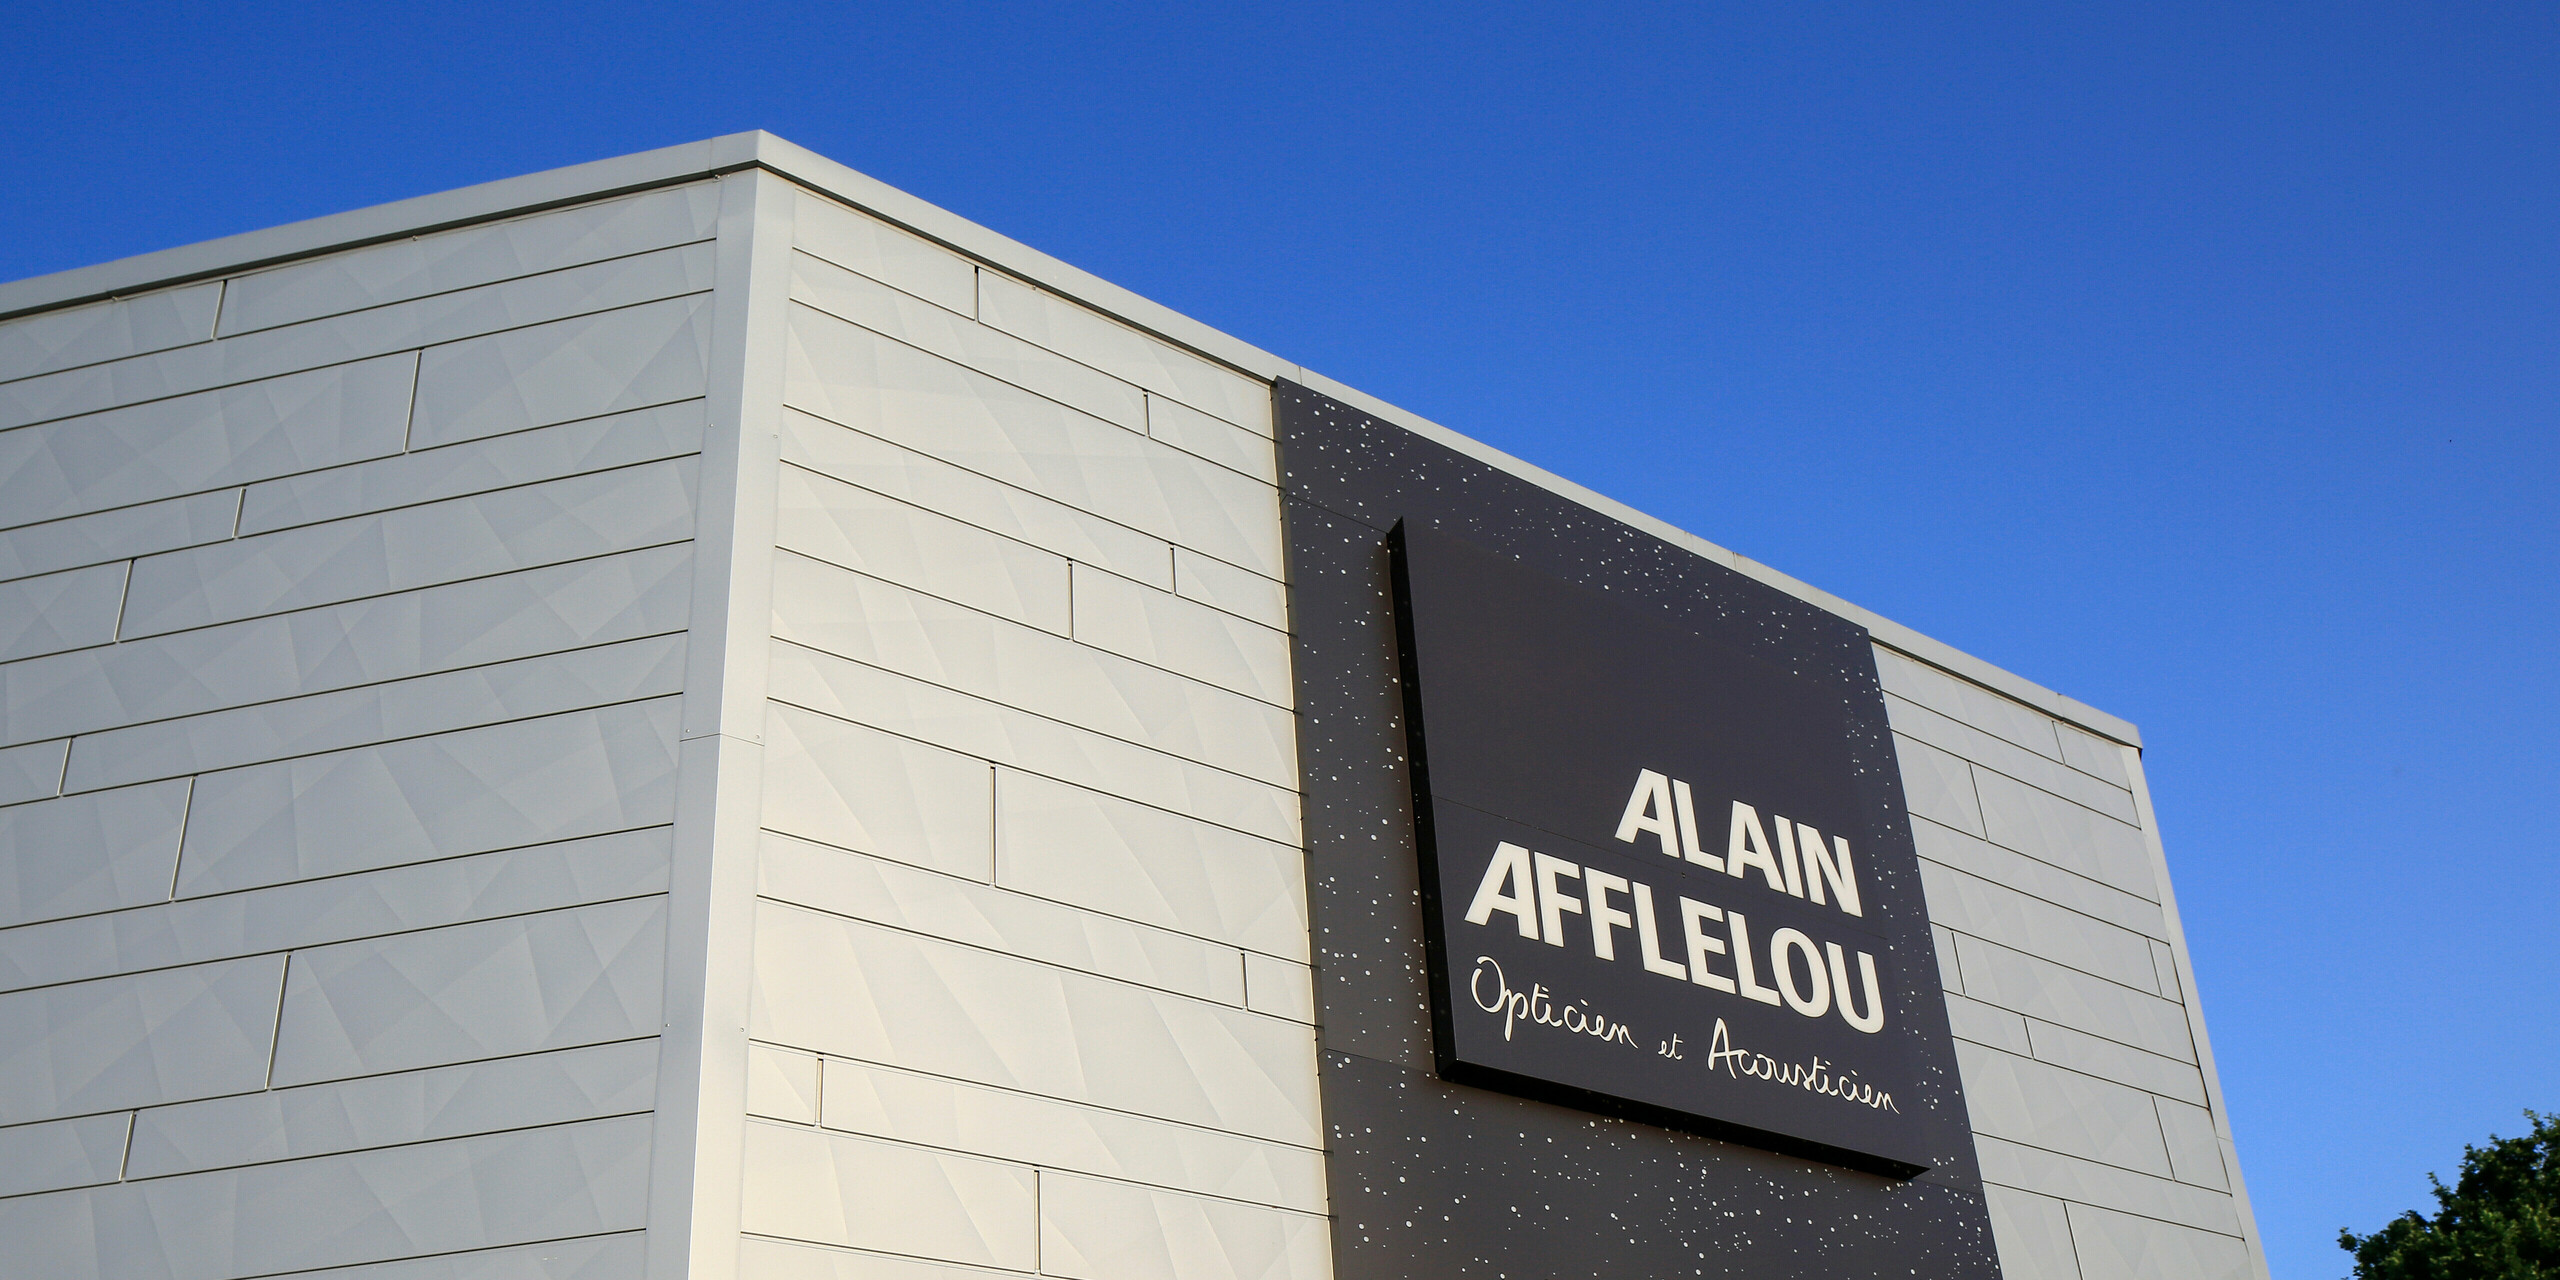 Vstupní prostor prodejny AFFLELOU v Auray s velkým firemním nápisem a extravagantní fasádou z PREFA Siding.X ve stříbrné metalíze